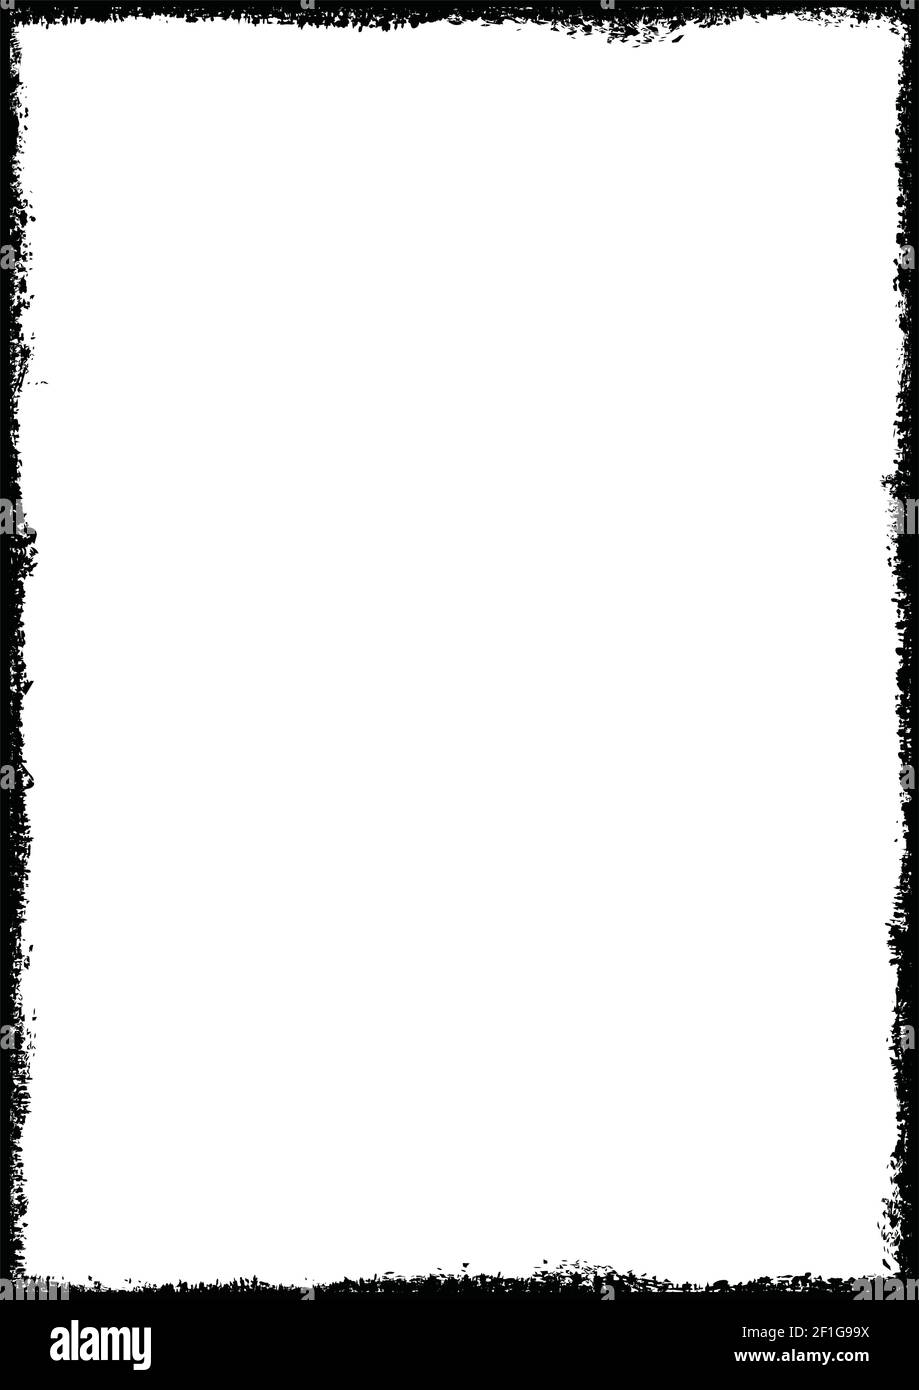 Grunge Old Picture Frame, forme vectorielle d'un cadre vertical proportionnel AU format A, adapté aux formats d'impression A5, A4, A3, A2, etc Illustration de Vecteur